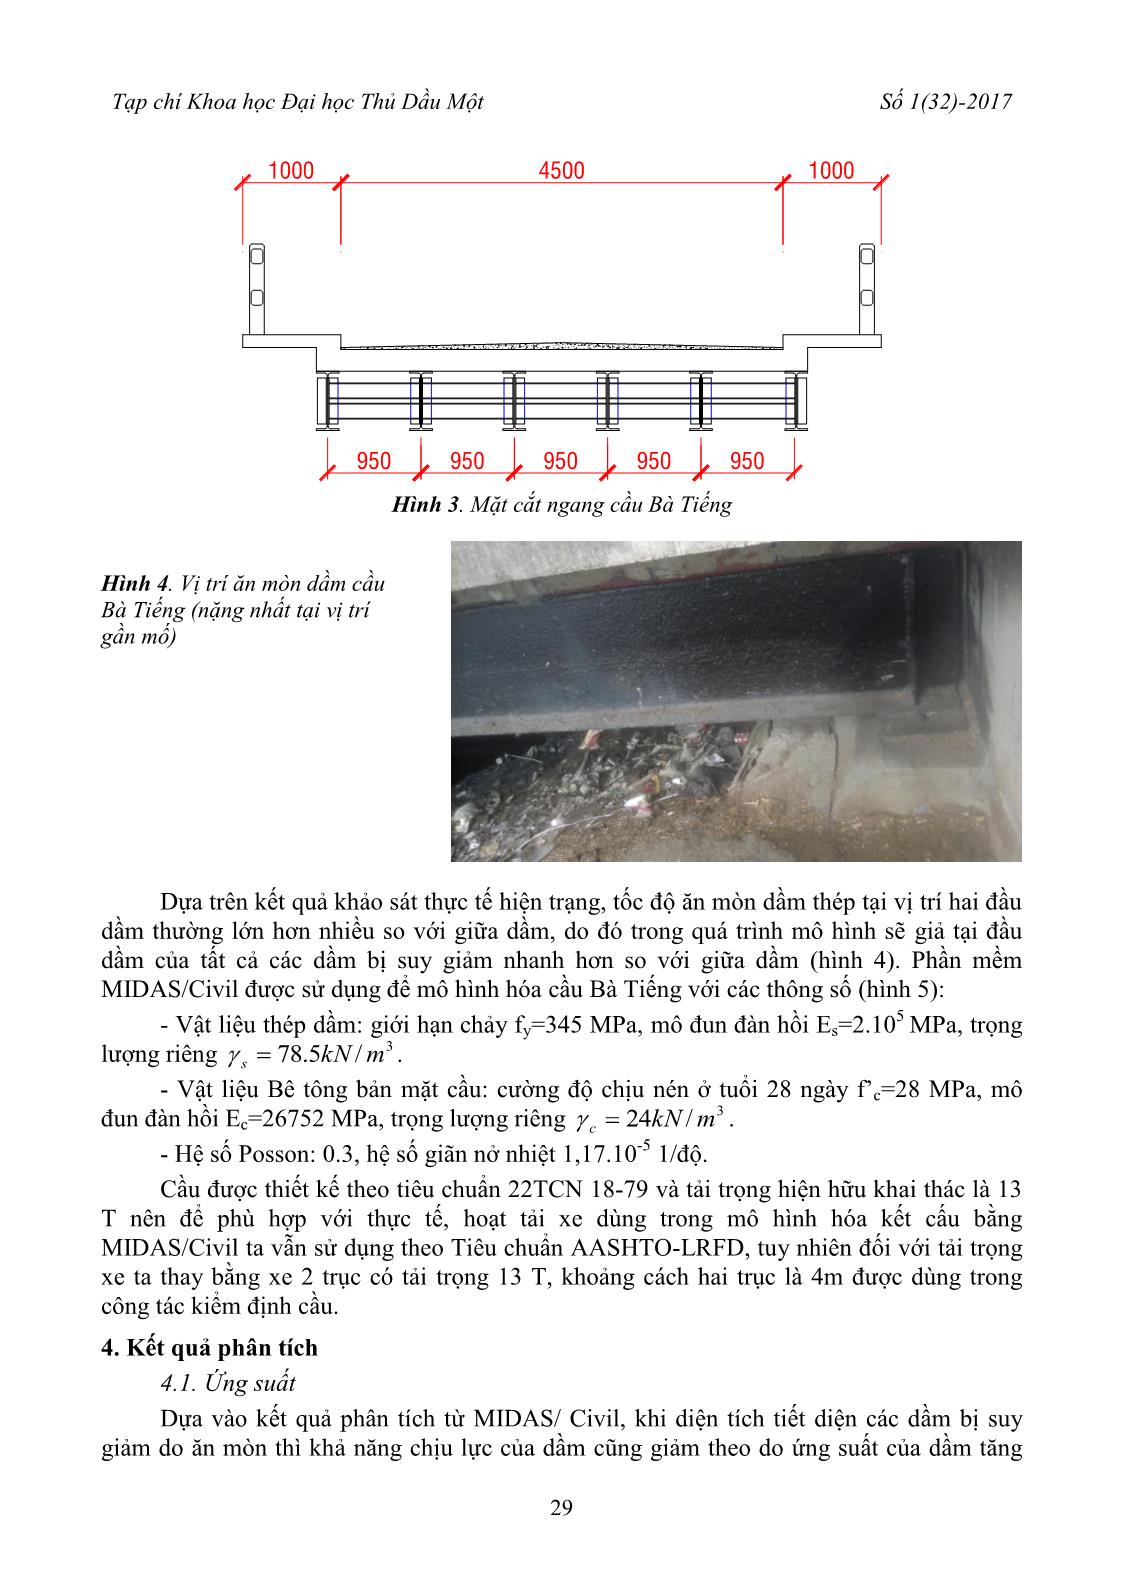 Ảnh hưởng của ăn mòn dầm thép đến khả năng chịu lực của cầu thép – bê tông cốt thép liên hợp giản đơn dưới tác dụng của hoạt tải xe trang 4